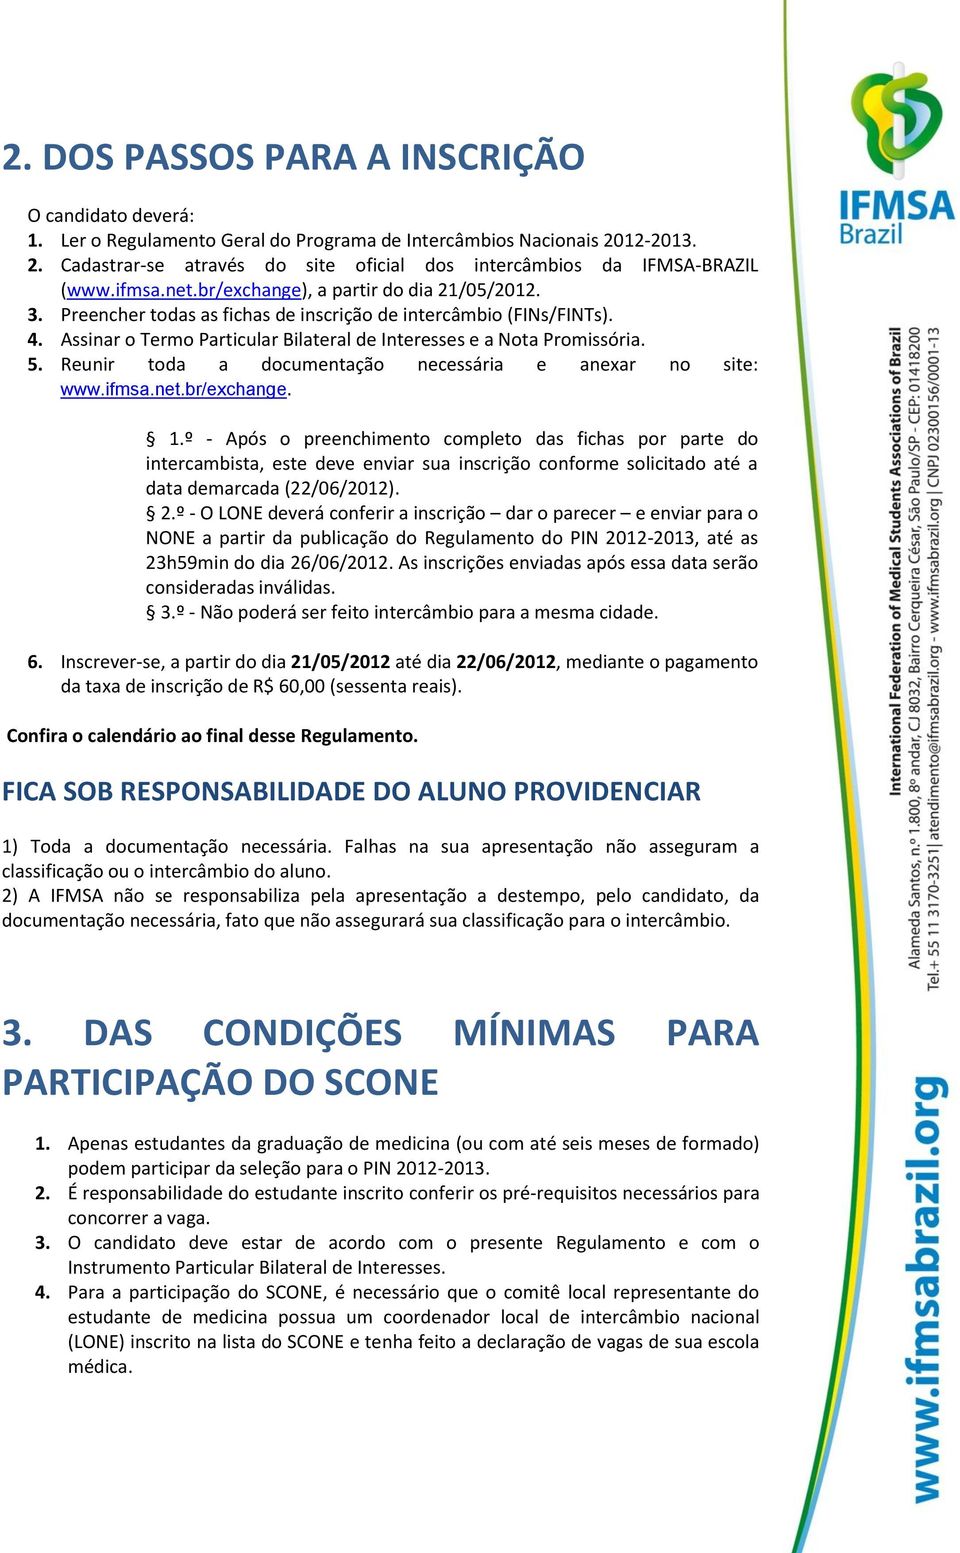 5. Reunir toda a documentação necessária e anexar no site: www.ifmsa.net.br/exchange. 1.